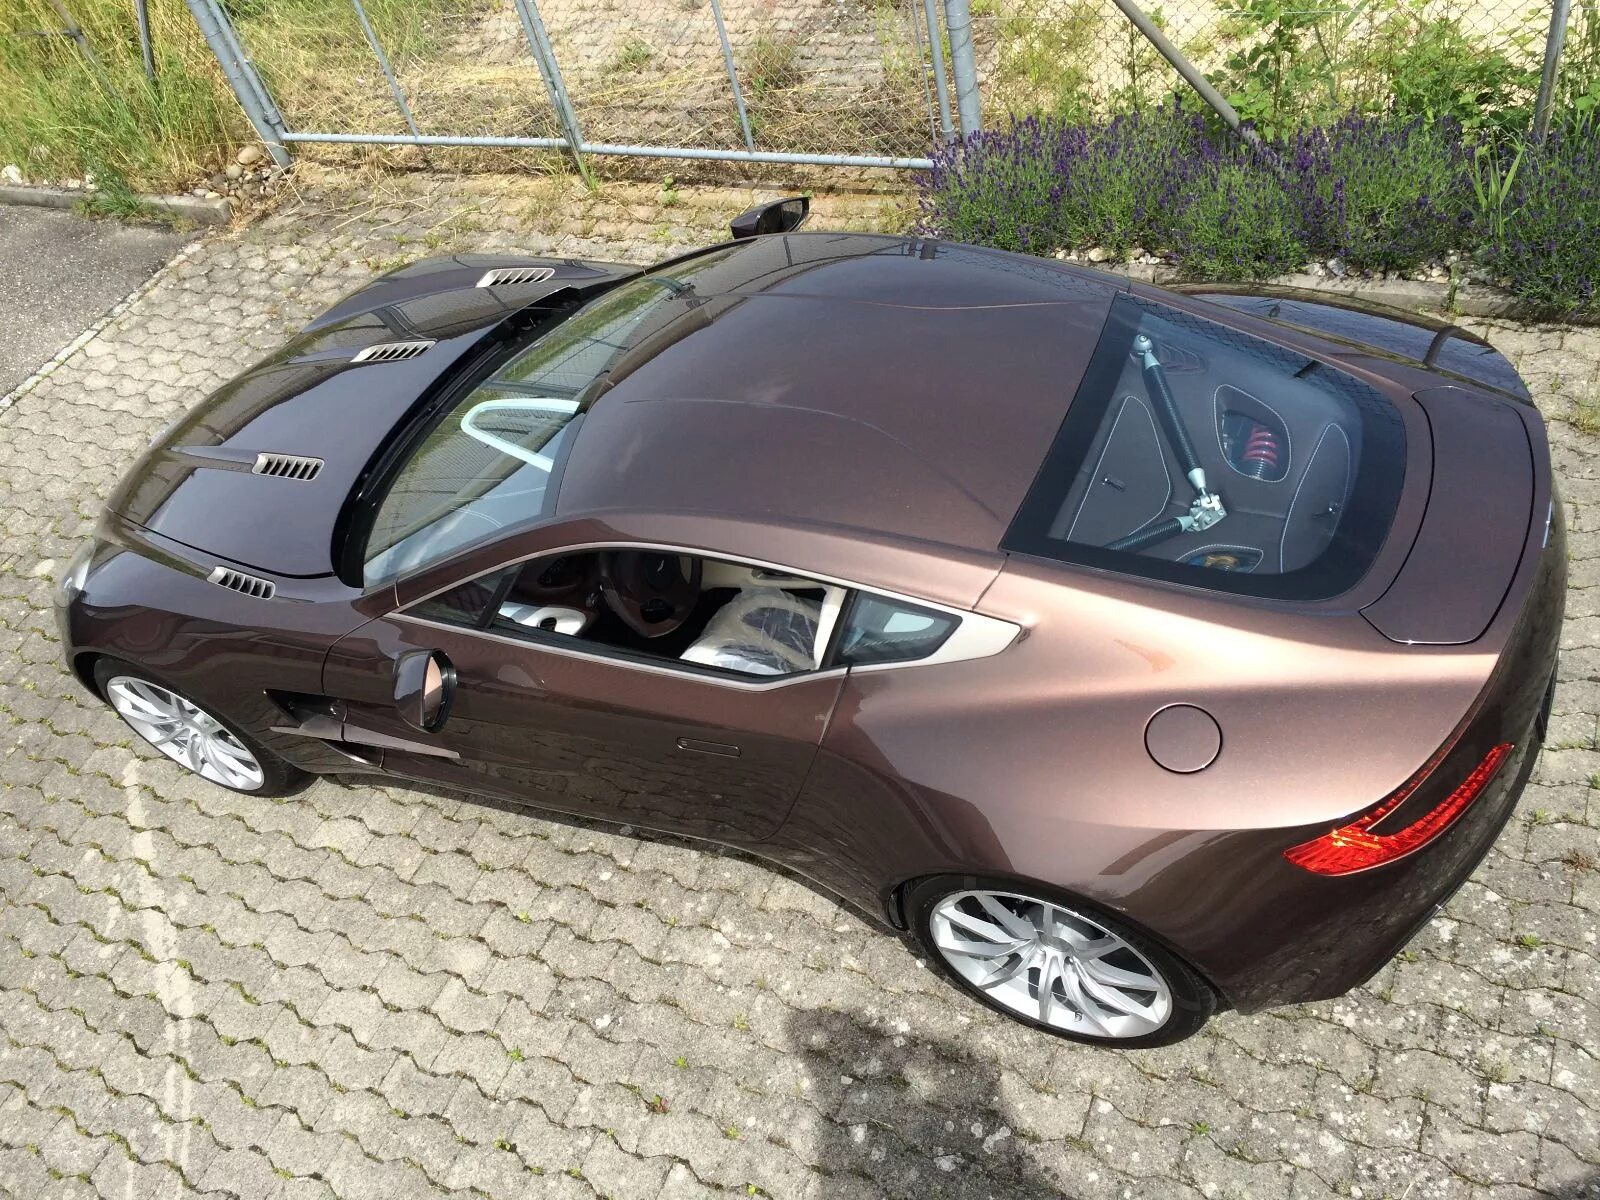 Автомобиль за 1 млн. Aston Martin one-77. Красивые машины недорогие. Интересные авто. Недорогая качественная машина.